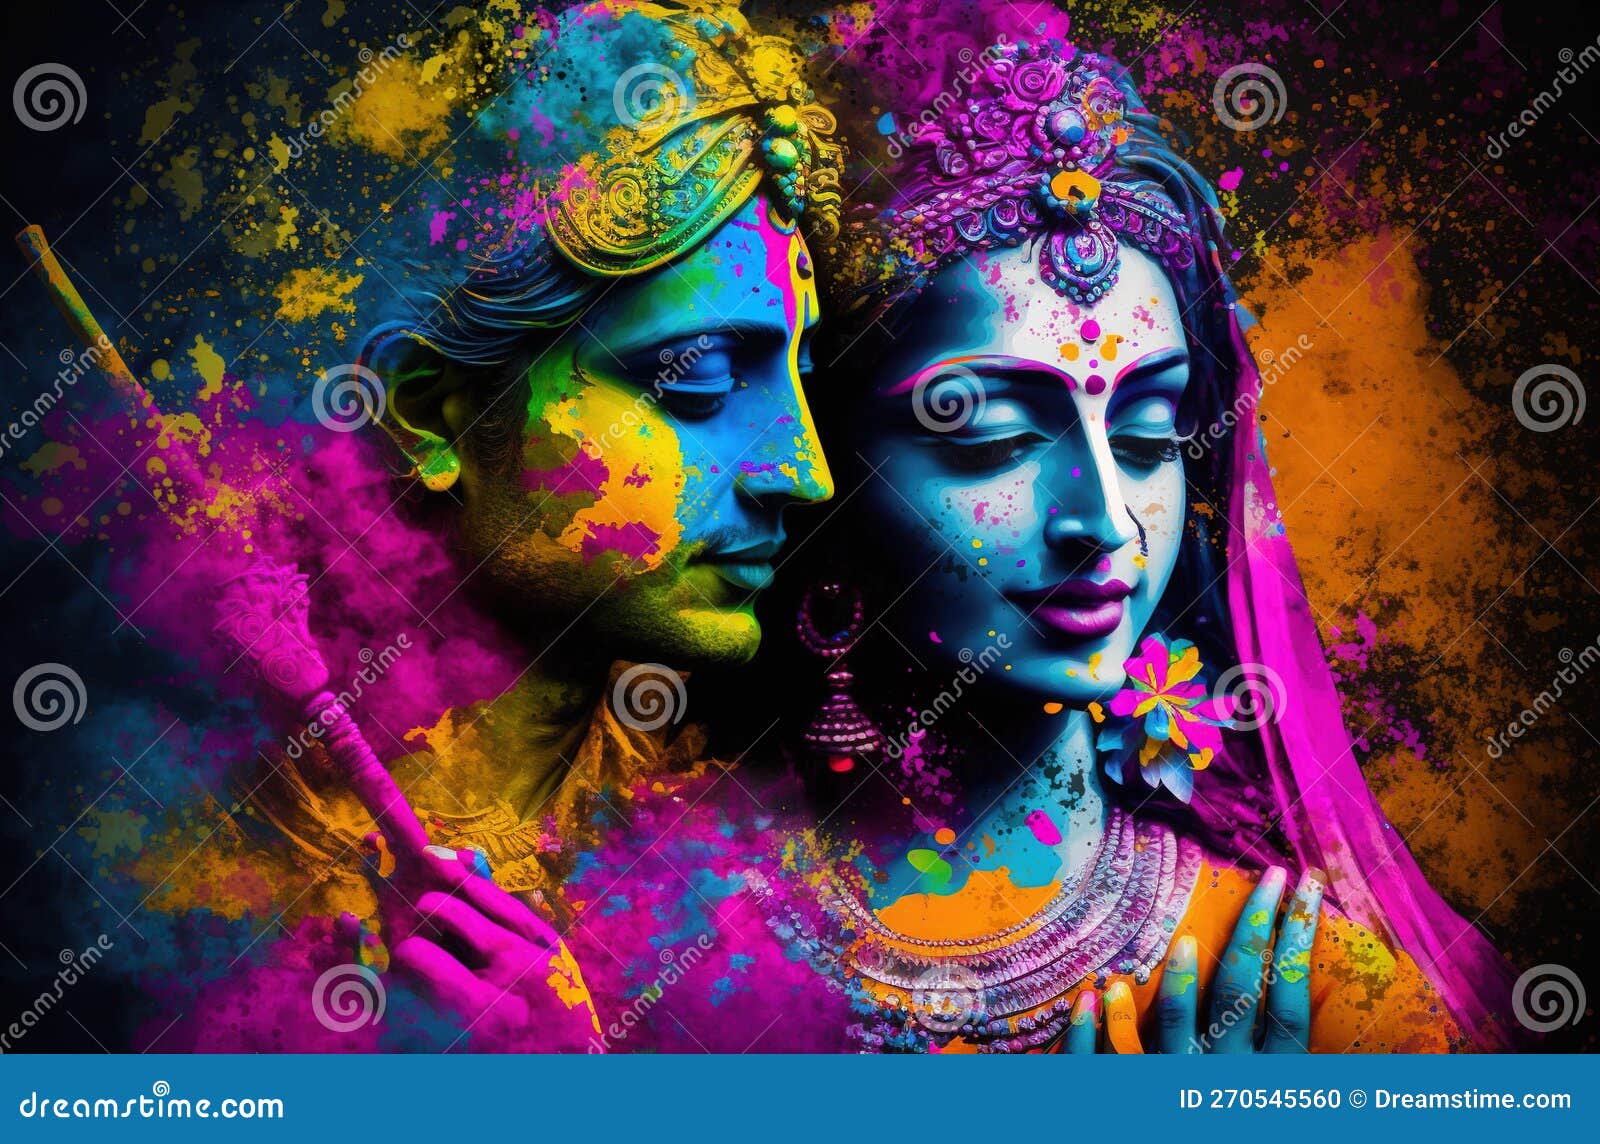 Hindu Mythological Couple Krishna and Radha Playing Holi Festival ...